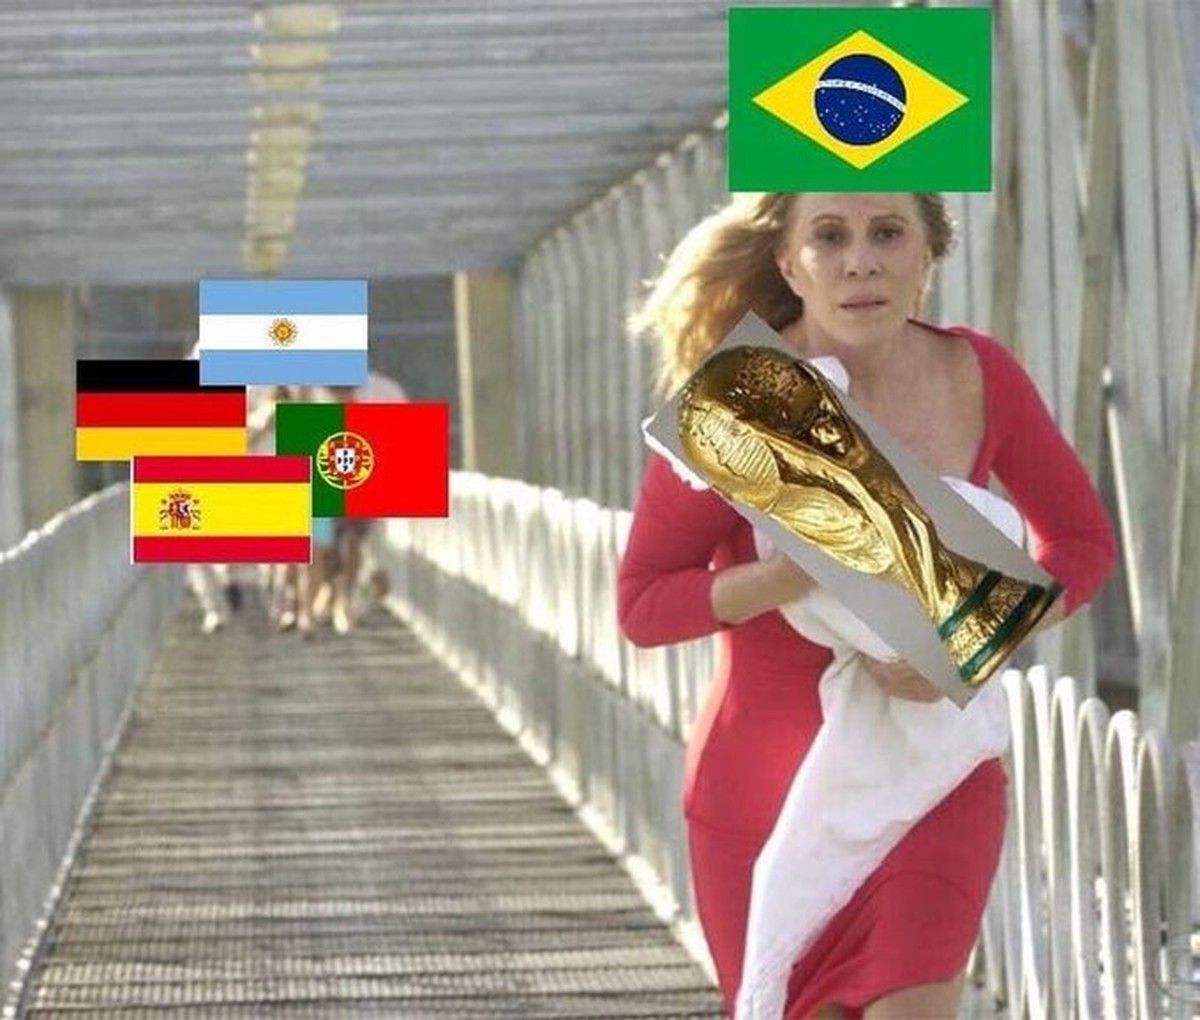 N/A - Memes da Vida QOmemesdavidaote Jogo do Brasil às Eu ss